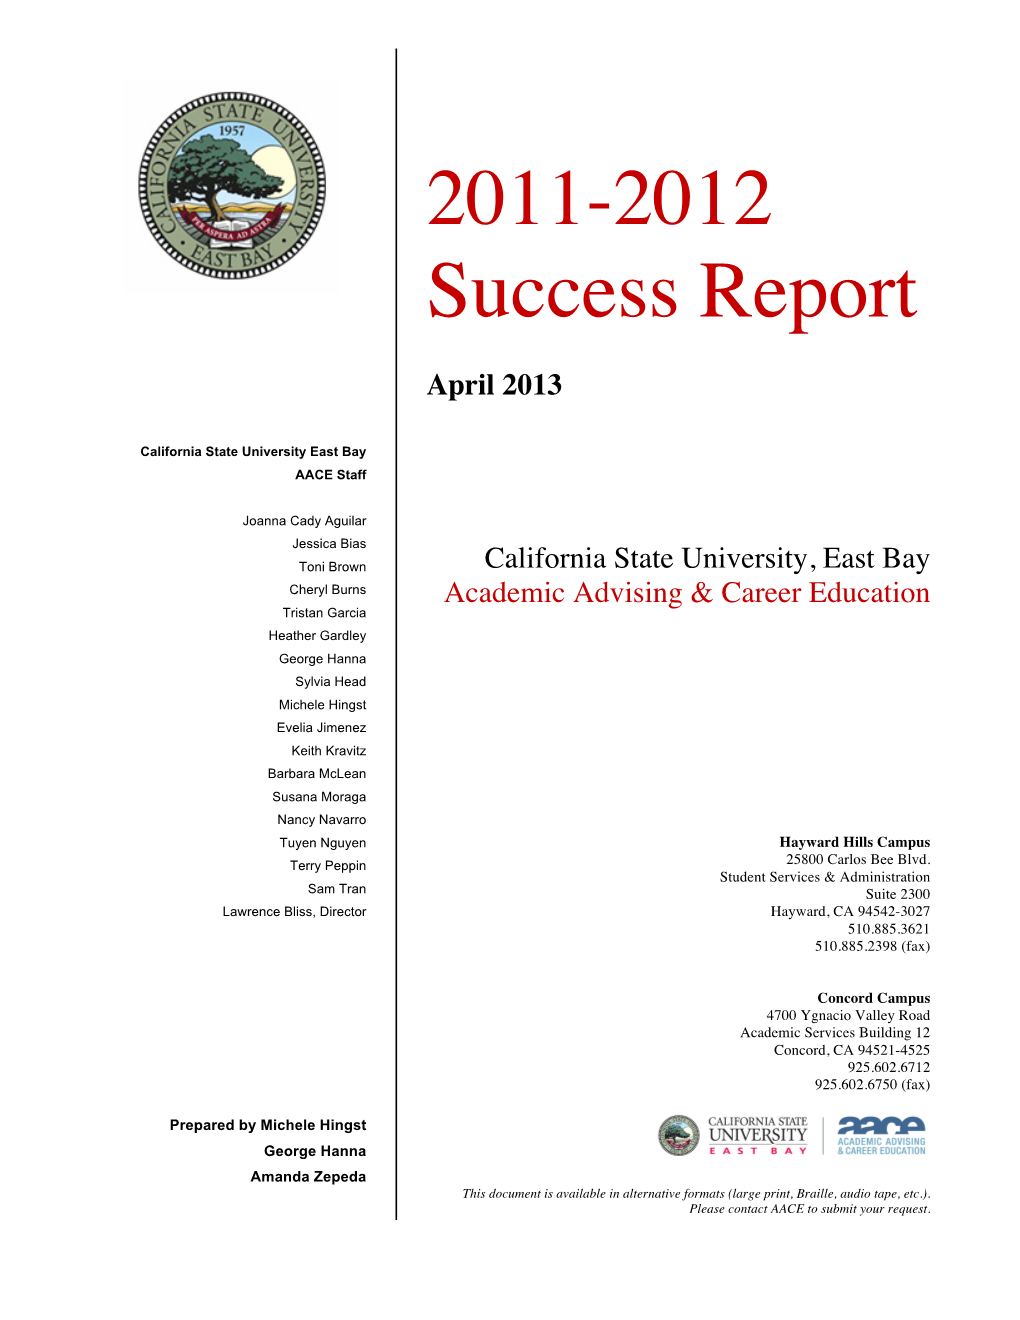 2011-2012 Success Report